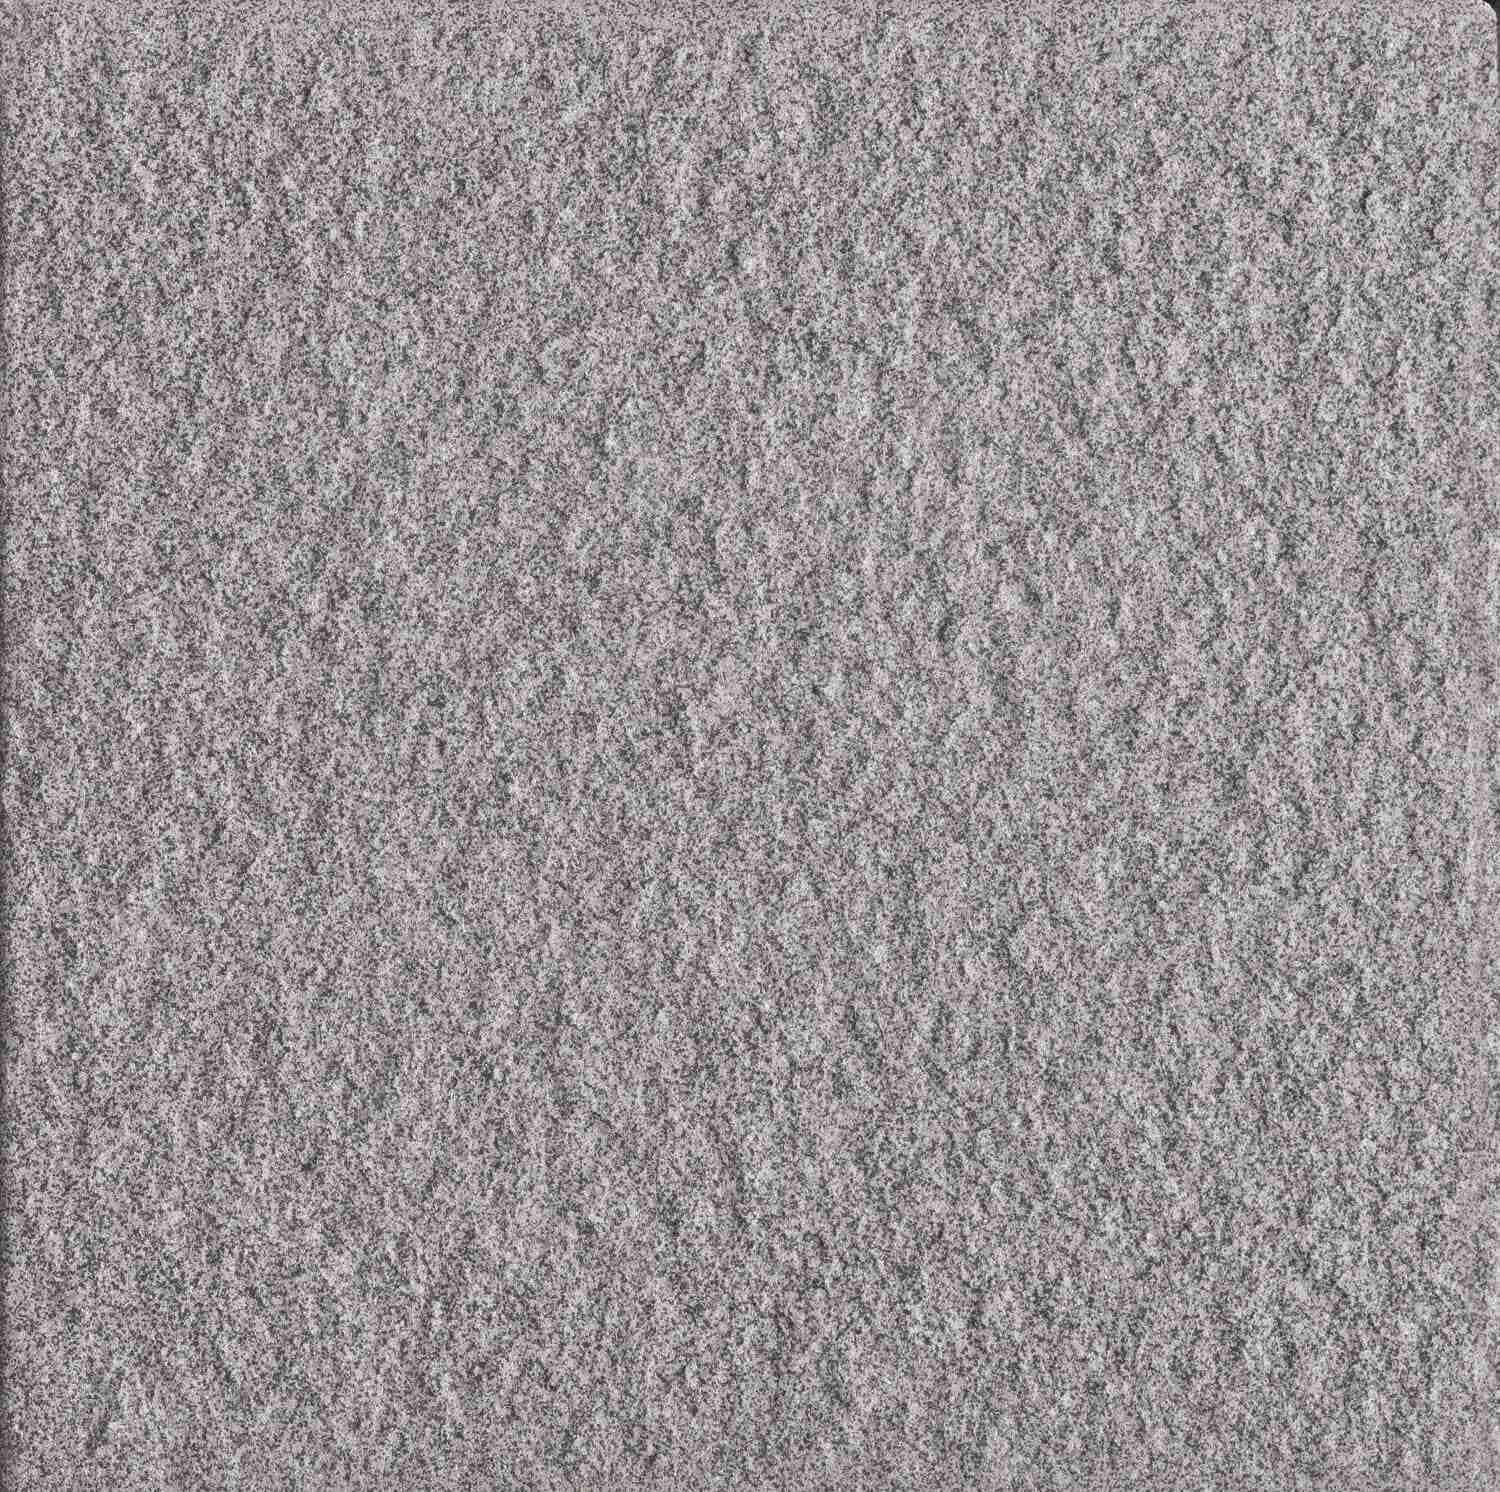 Dorset Woolliscroft Luna Dark Grey Slip Resistant Quarry Tile 148x148mm